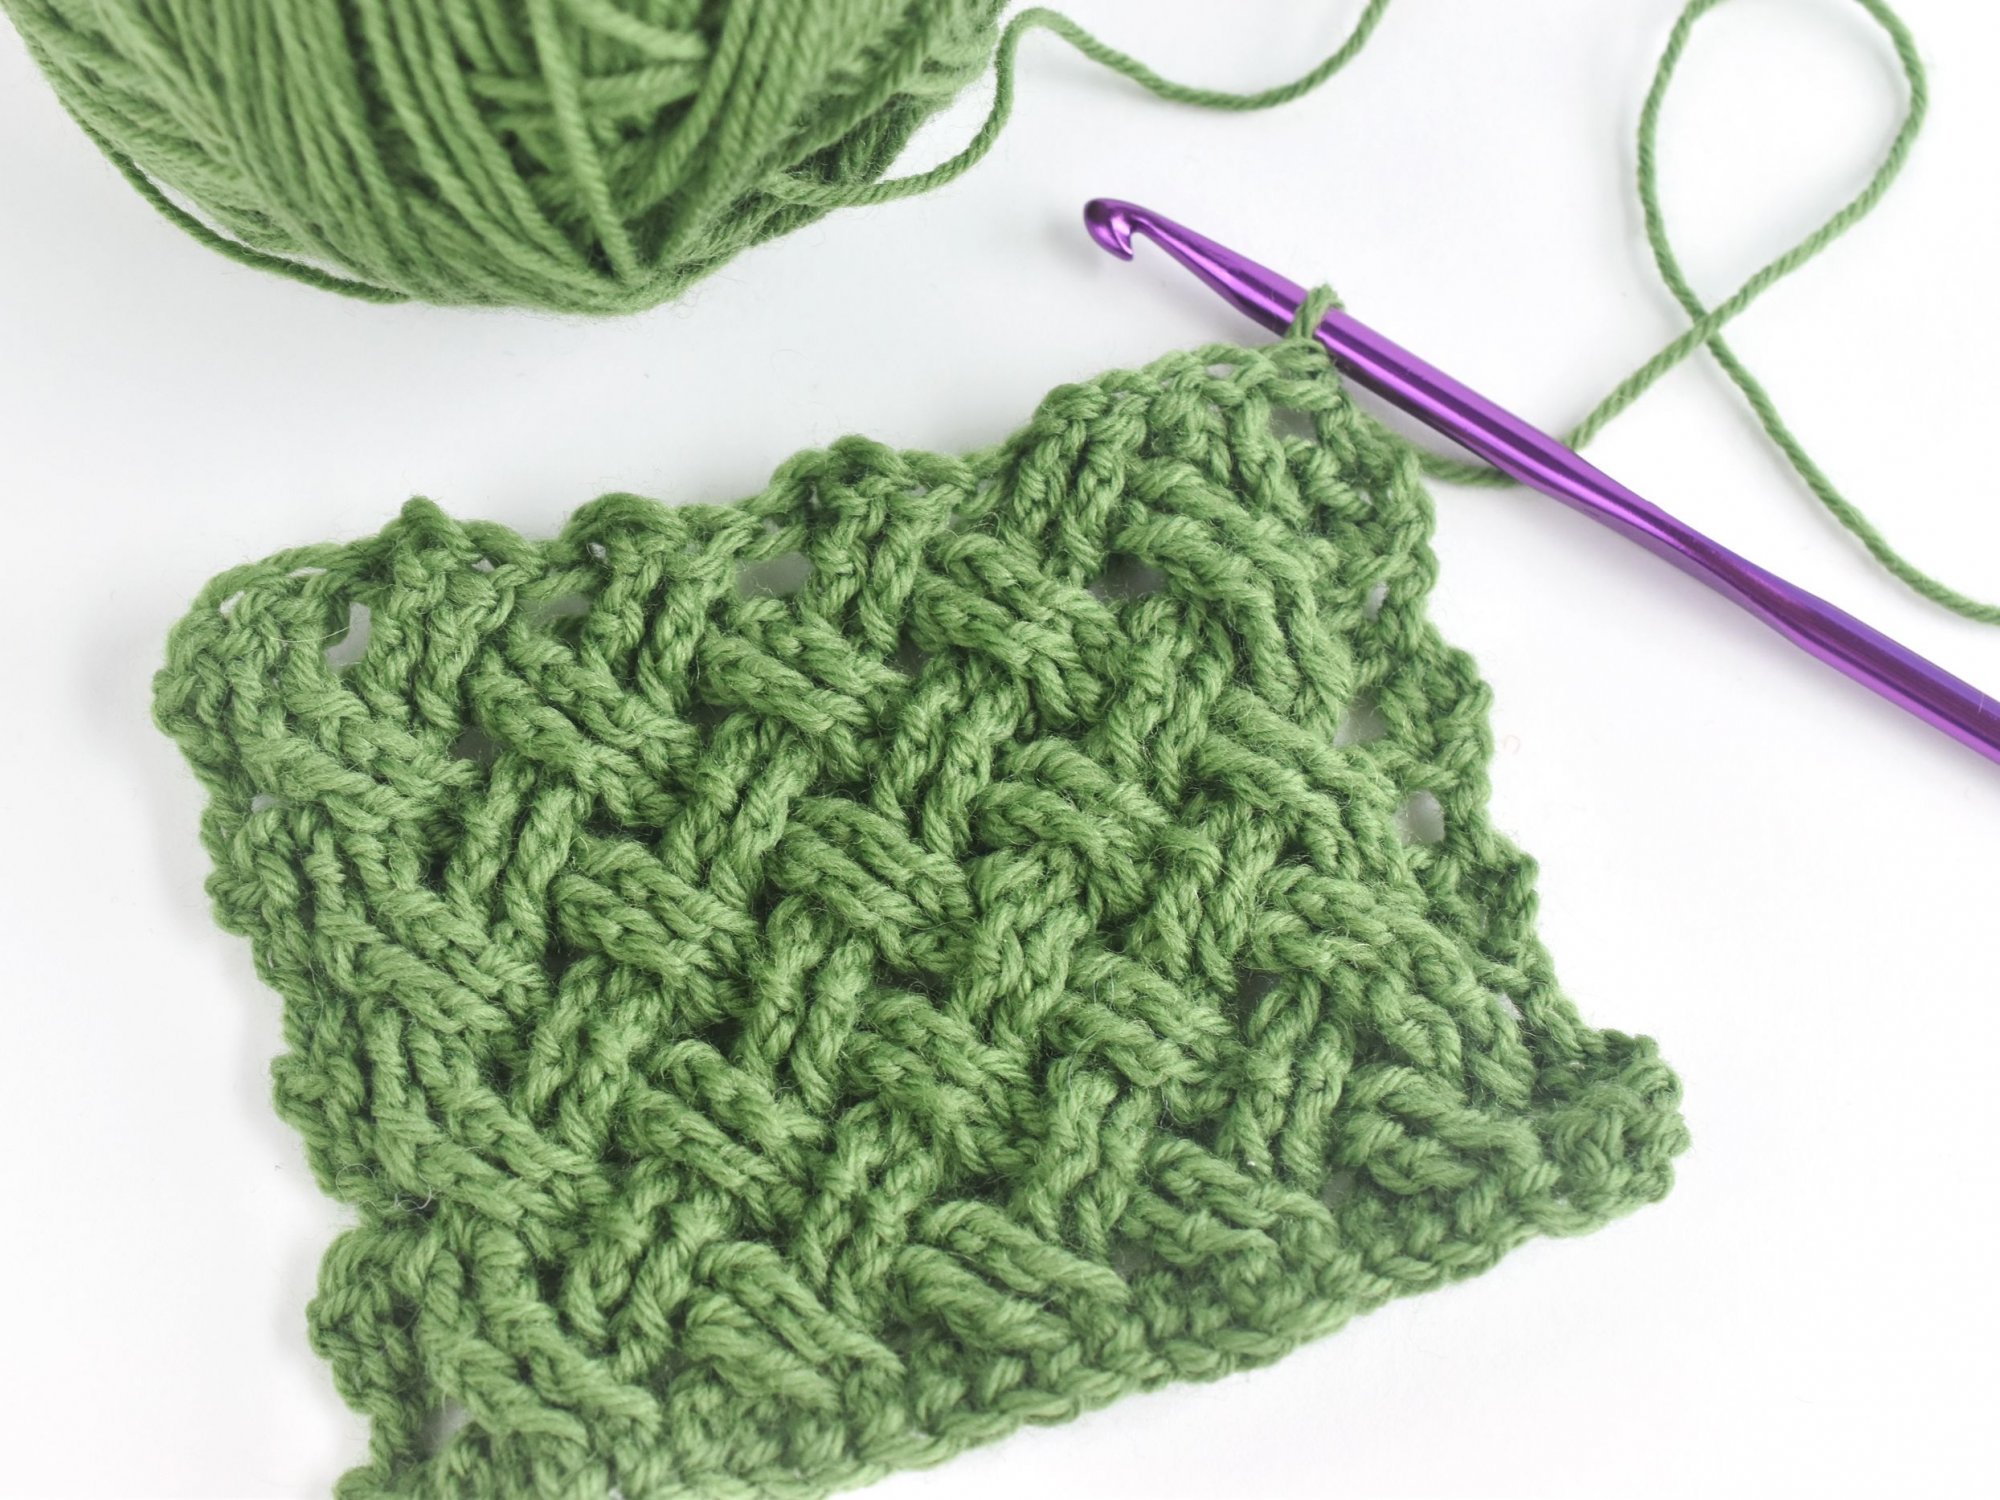 Weaving crochet